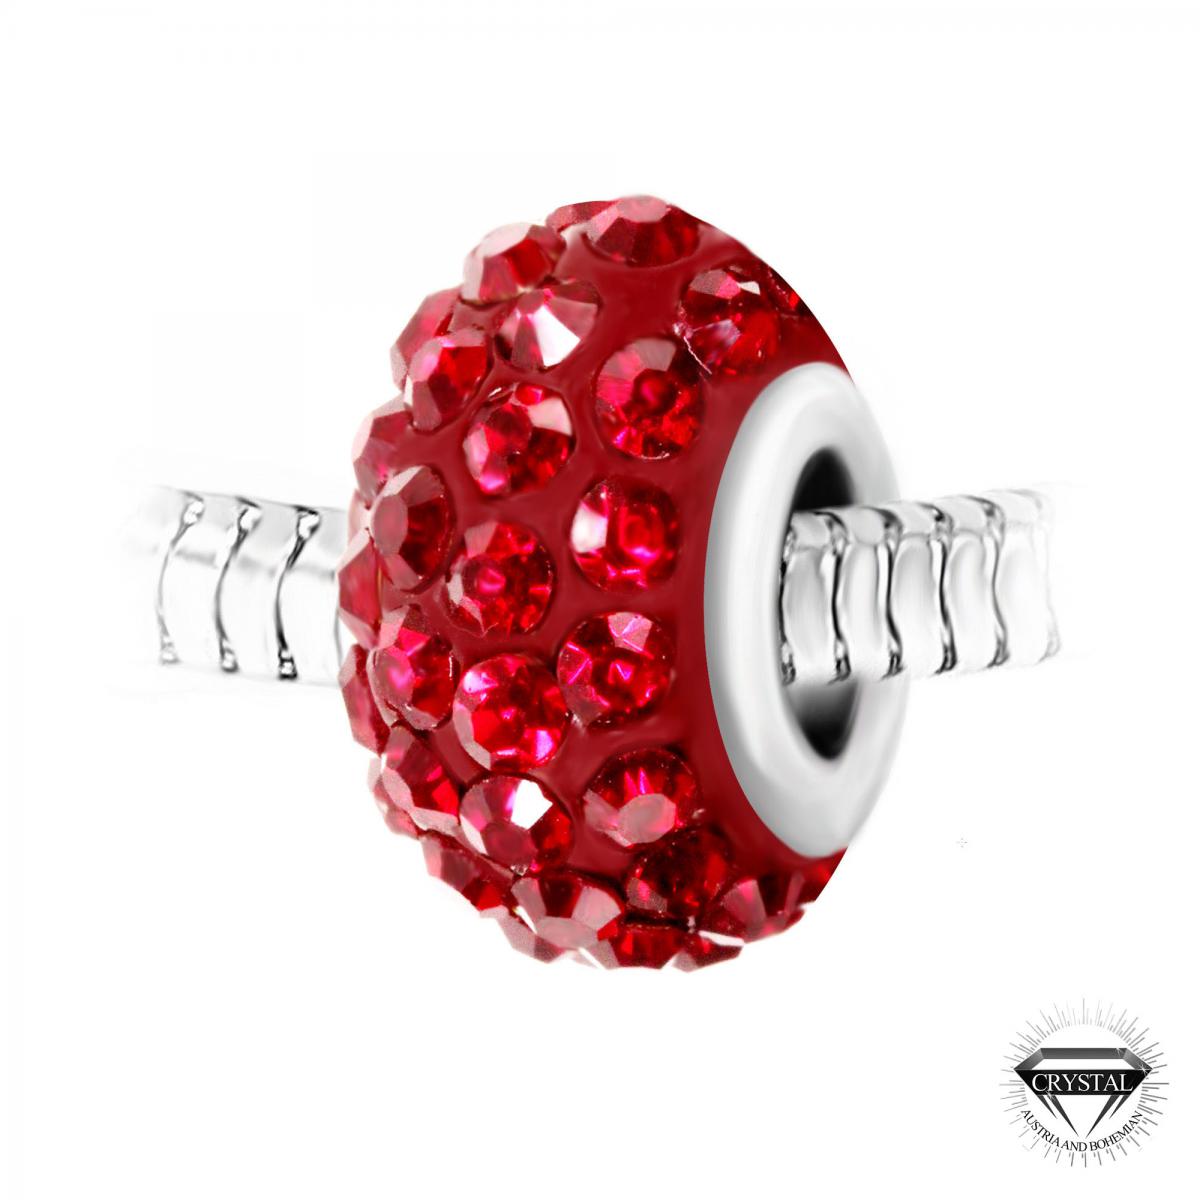 Promo : Charm perle pavé de cristaux rouges et acier par SC Crystal BEA0027